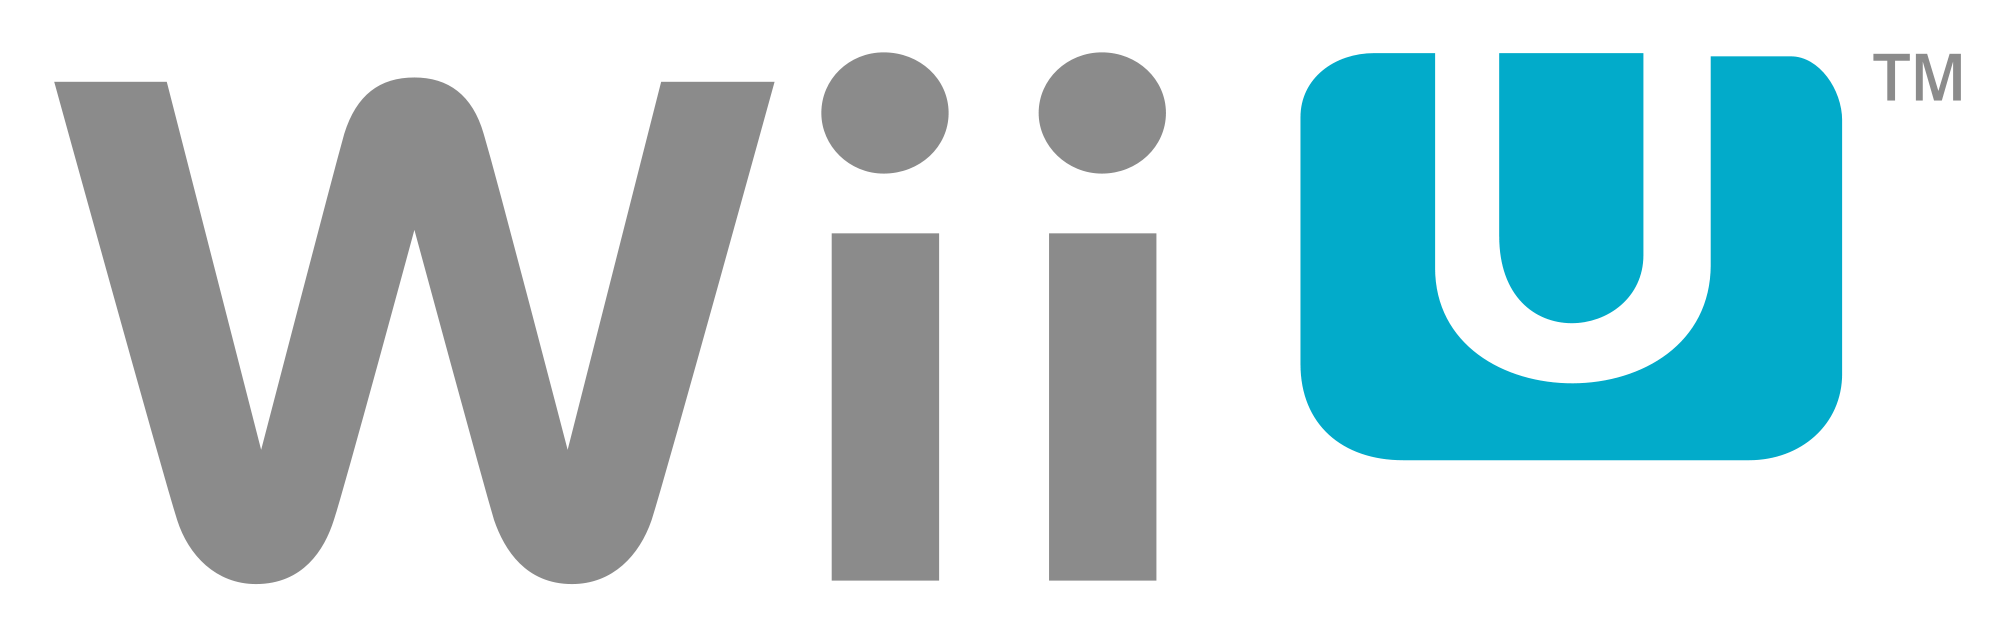 Wii Logo - Wii u Logos